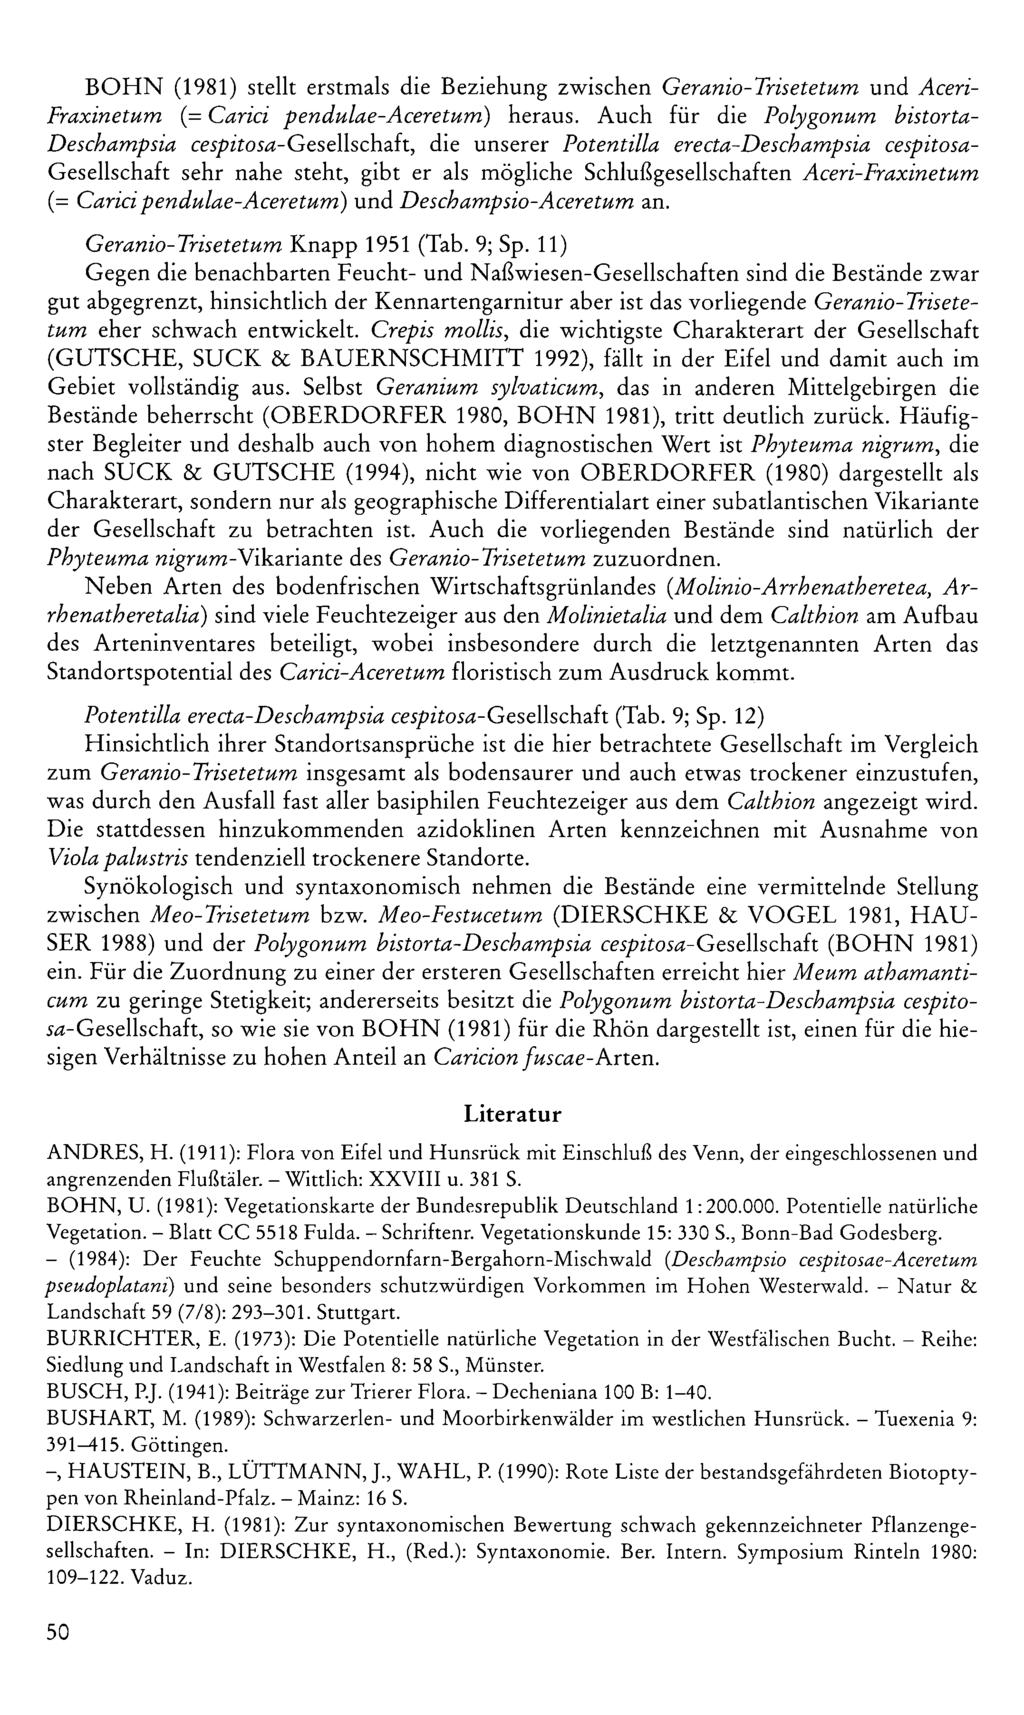 BOHN (98) stellt erstmals die Beziehung zwischen Geranio-Trisetetum und Aceri- Fraxinetum (= Carici pendulae-aceretum) heraus.